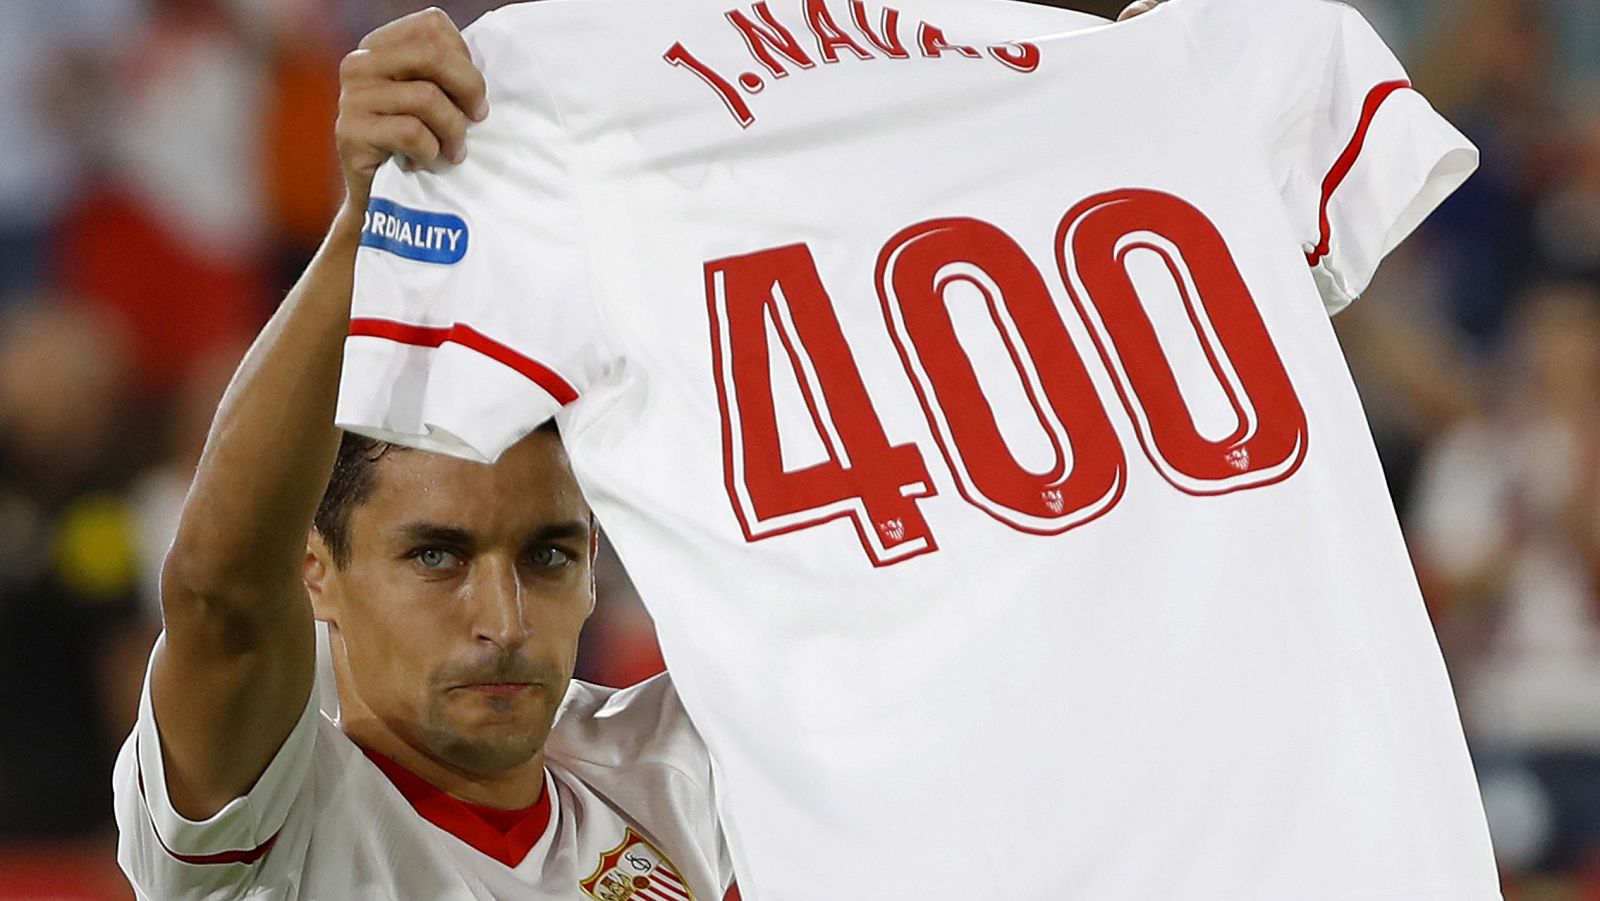 El centrocampista del Sevilla, Jesús Navas, muestra una camiseta celebrando su partido 400 con el equipo.